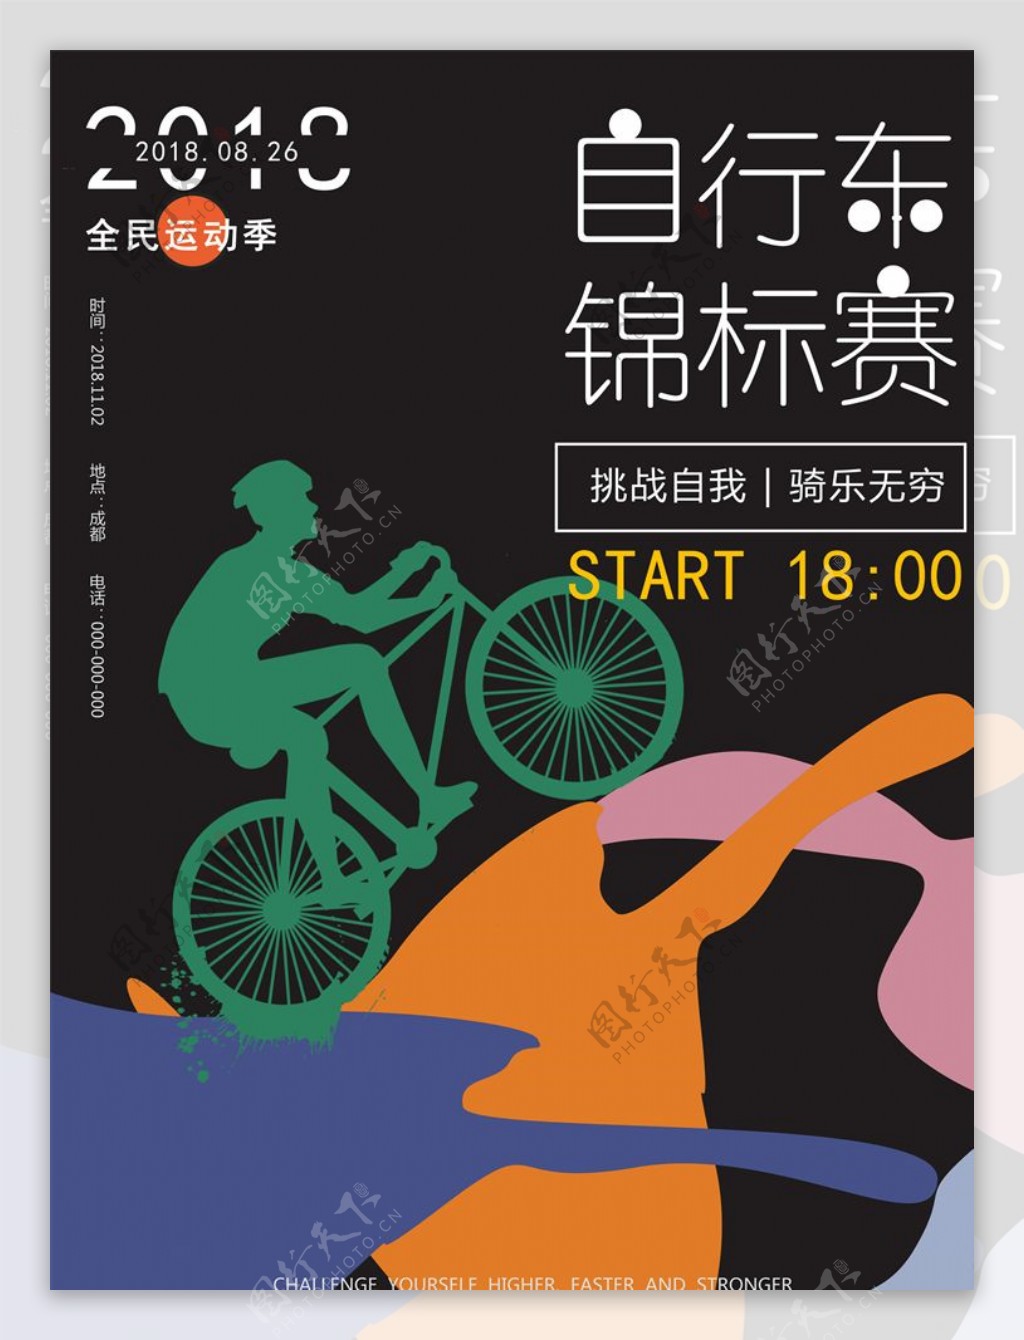 自行车海报图片